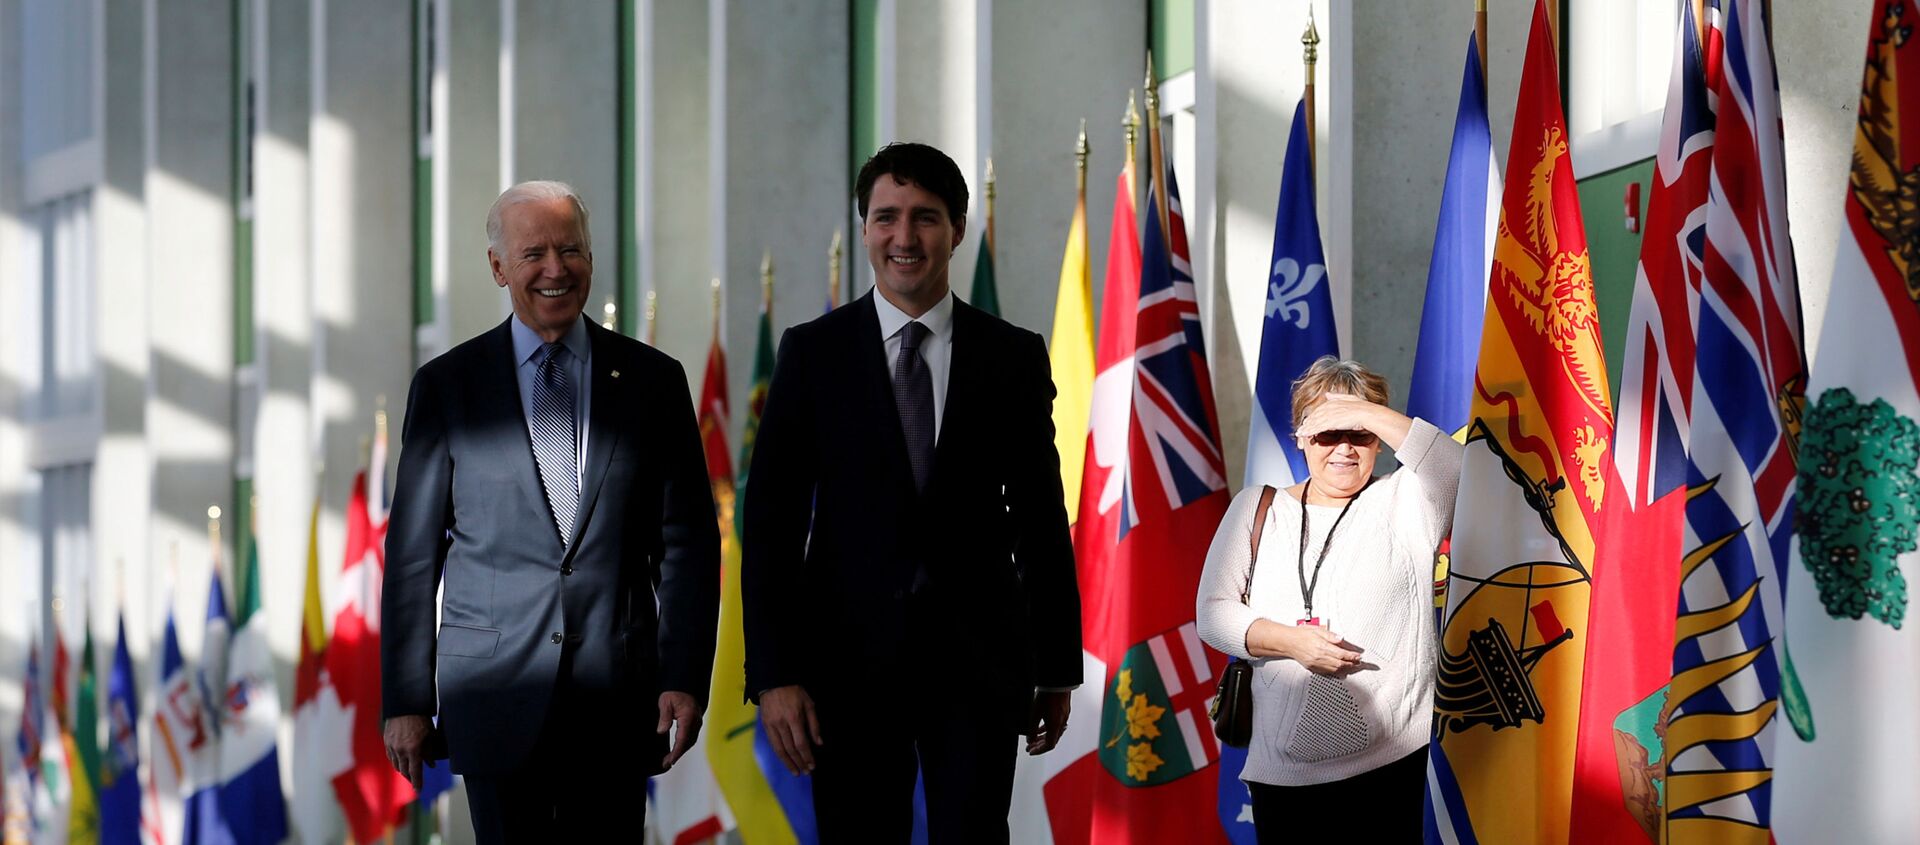 Một người phụ nữ chứng kiến Tổng thống Hoa Kỳ hiện tại Joe Biden (L) và Thủ tướng Canada Justin Trudeau đến dự cuộc họp của các Bộ trưởng đầu tiên ở Ottawa, Ontario, Canada, ngày 9 tháng 12 năm 2016 - Sputnik Việt Nam, 1920, 24.02.2021